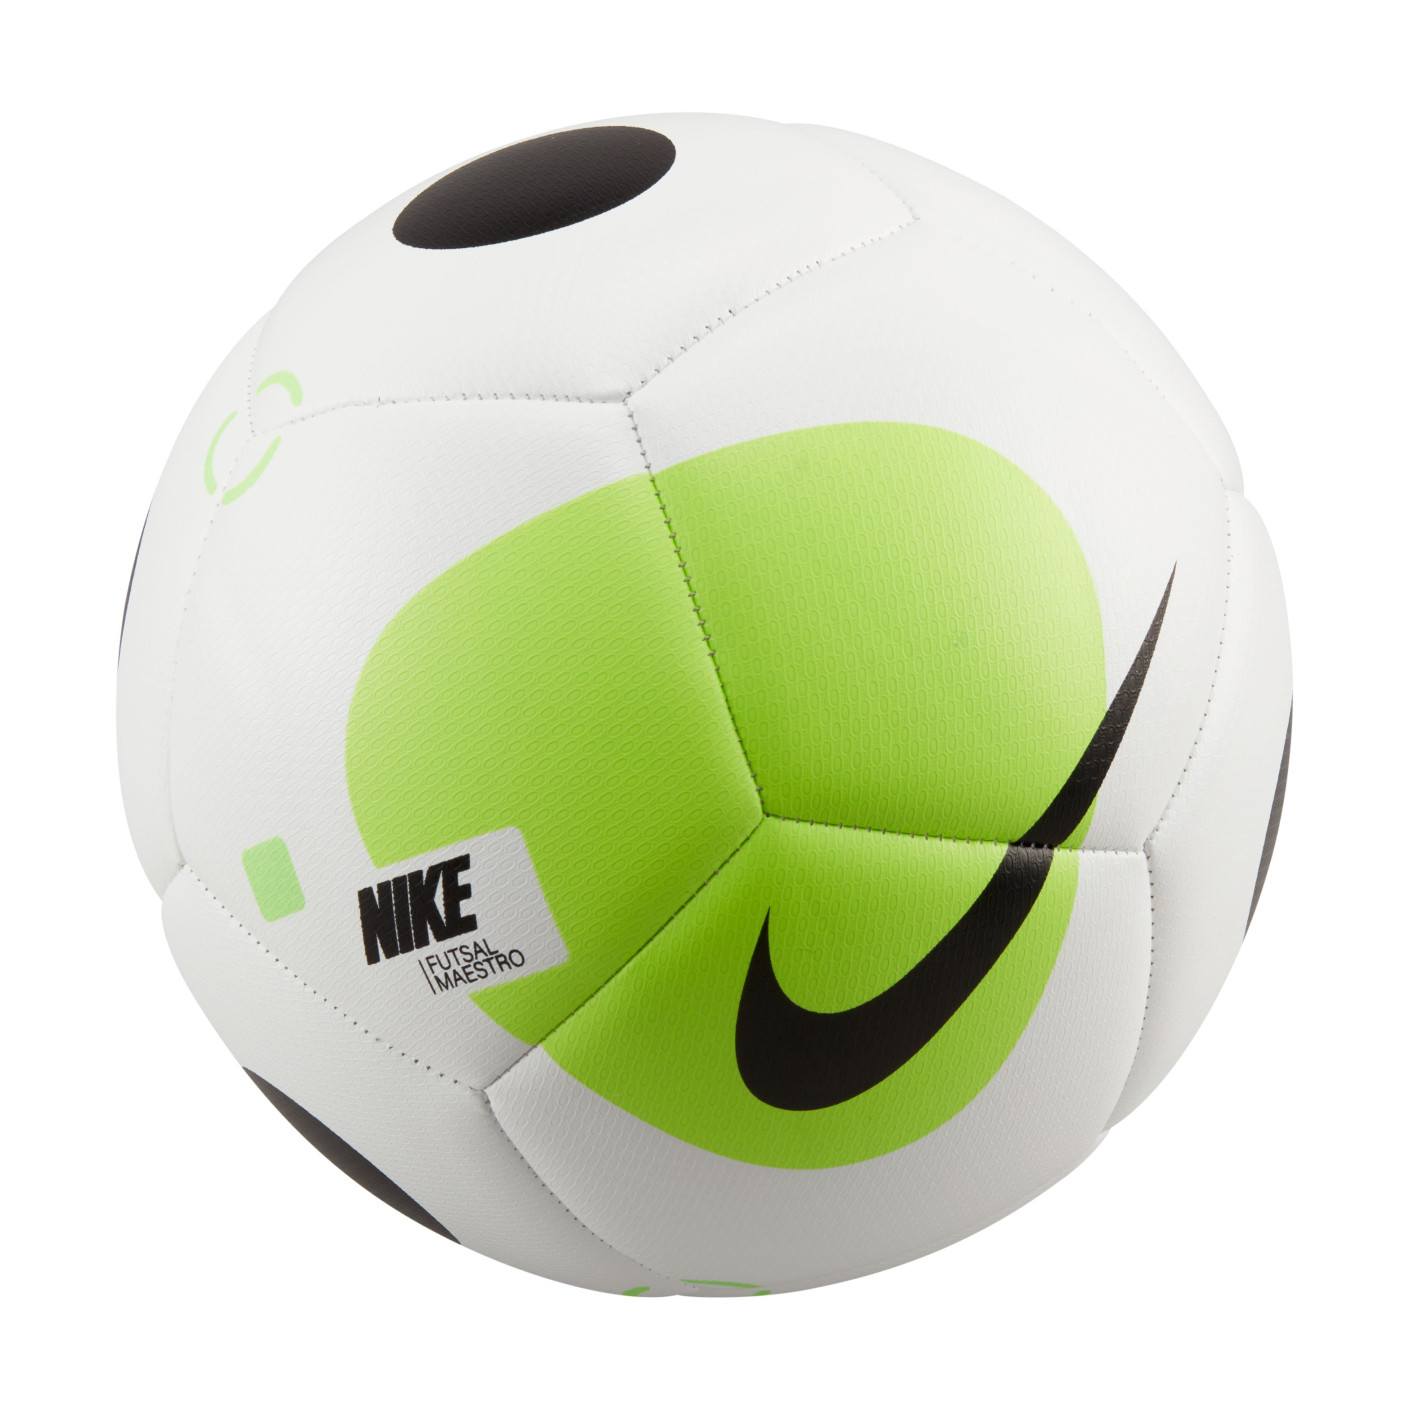 Nike Futsal Maestro Ballon de Football en Salle Taille 4 Blanc Vert Clair Noir